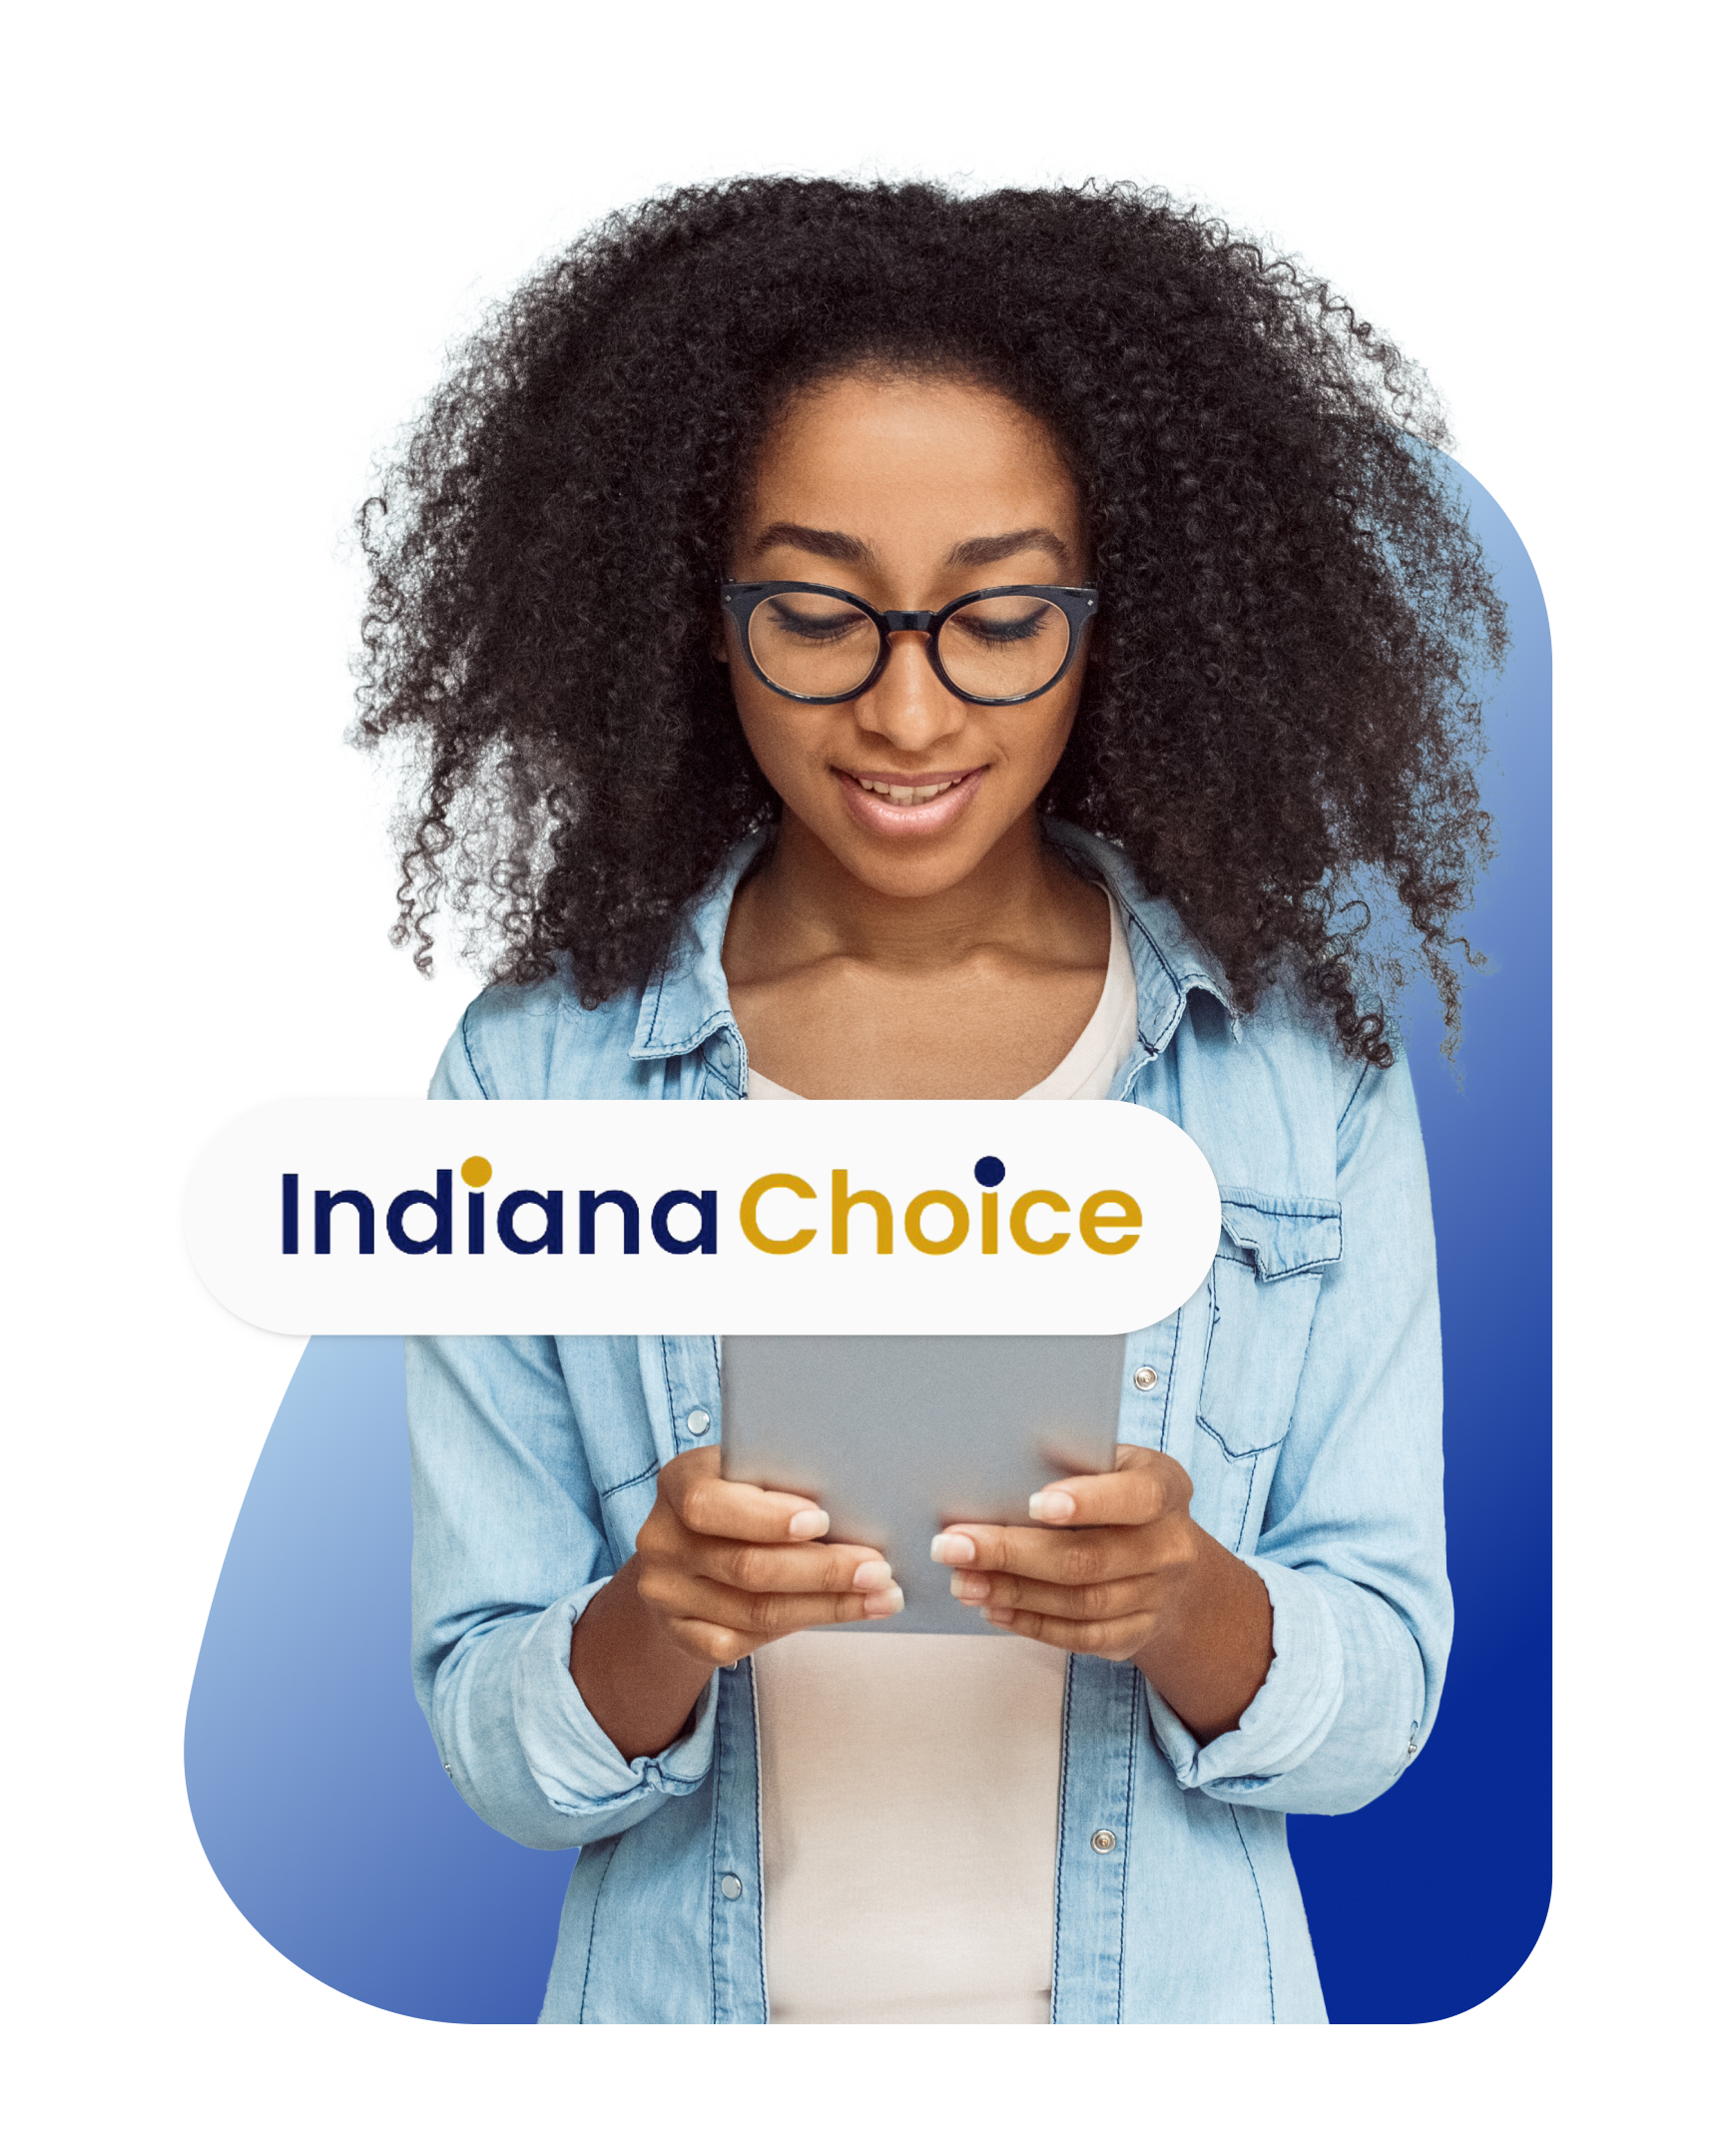 Indiana Choice Scholarship Program image 1 (name Indiana Choice Scholarship)